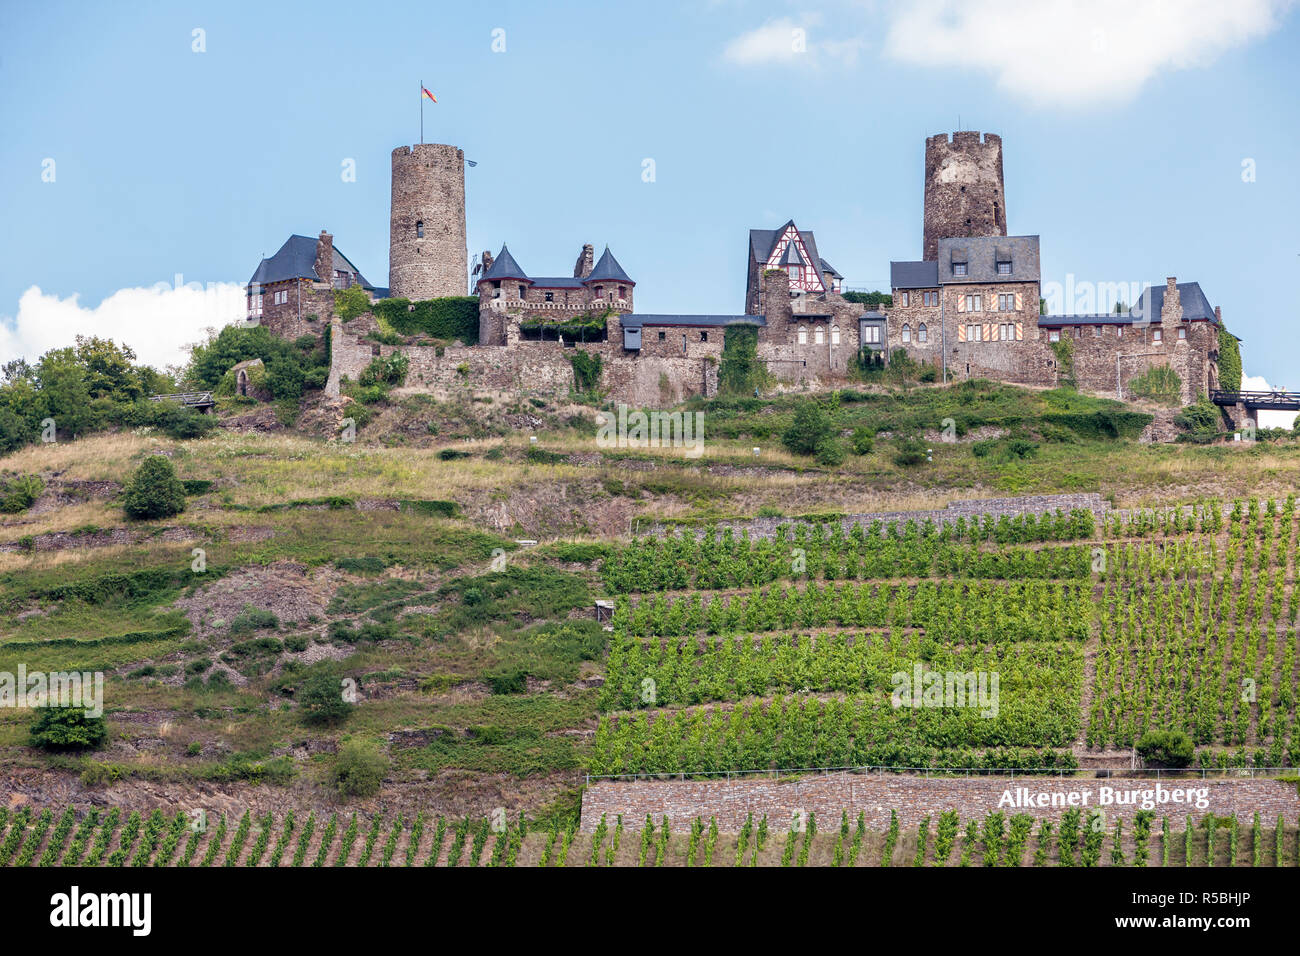 Alken, Deutschland. Burg Thurant (Burg Thurant), oberhalb der Mosel. Weinberge an steilen Hängen. Stockfoto